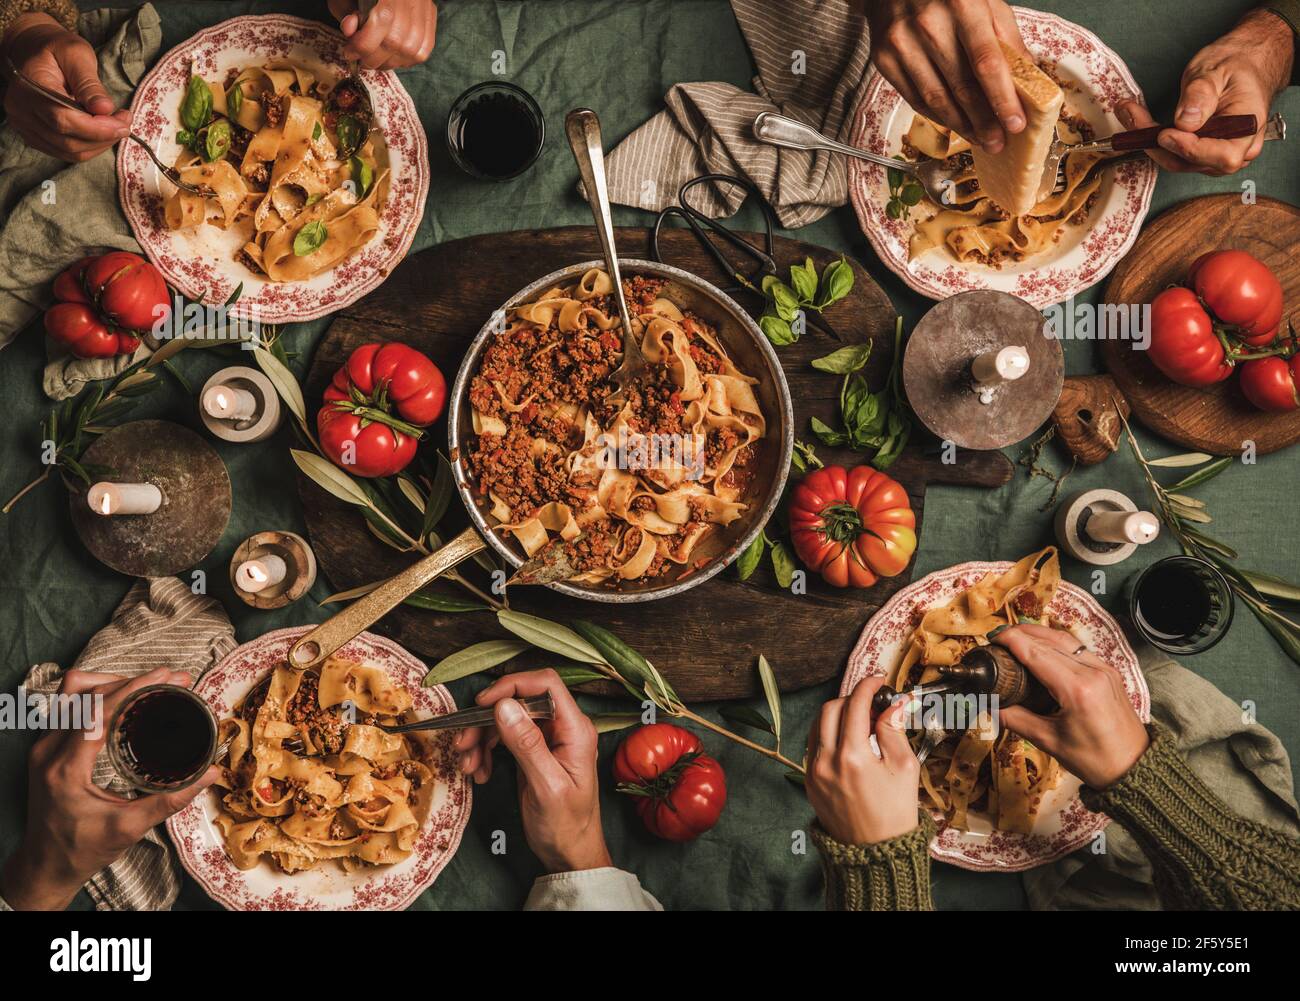 Menschen essen Tagliatelle Bolognese bei Familie Abendessen gahering Stockfoto